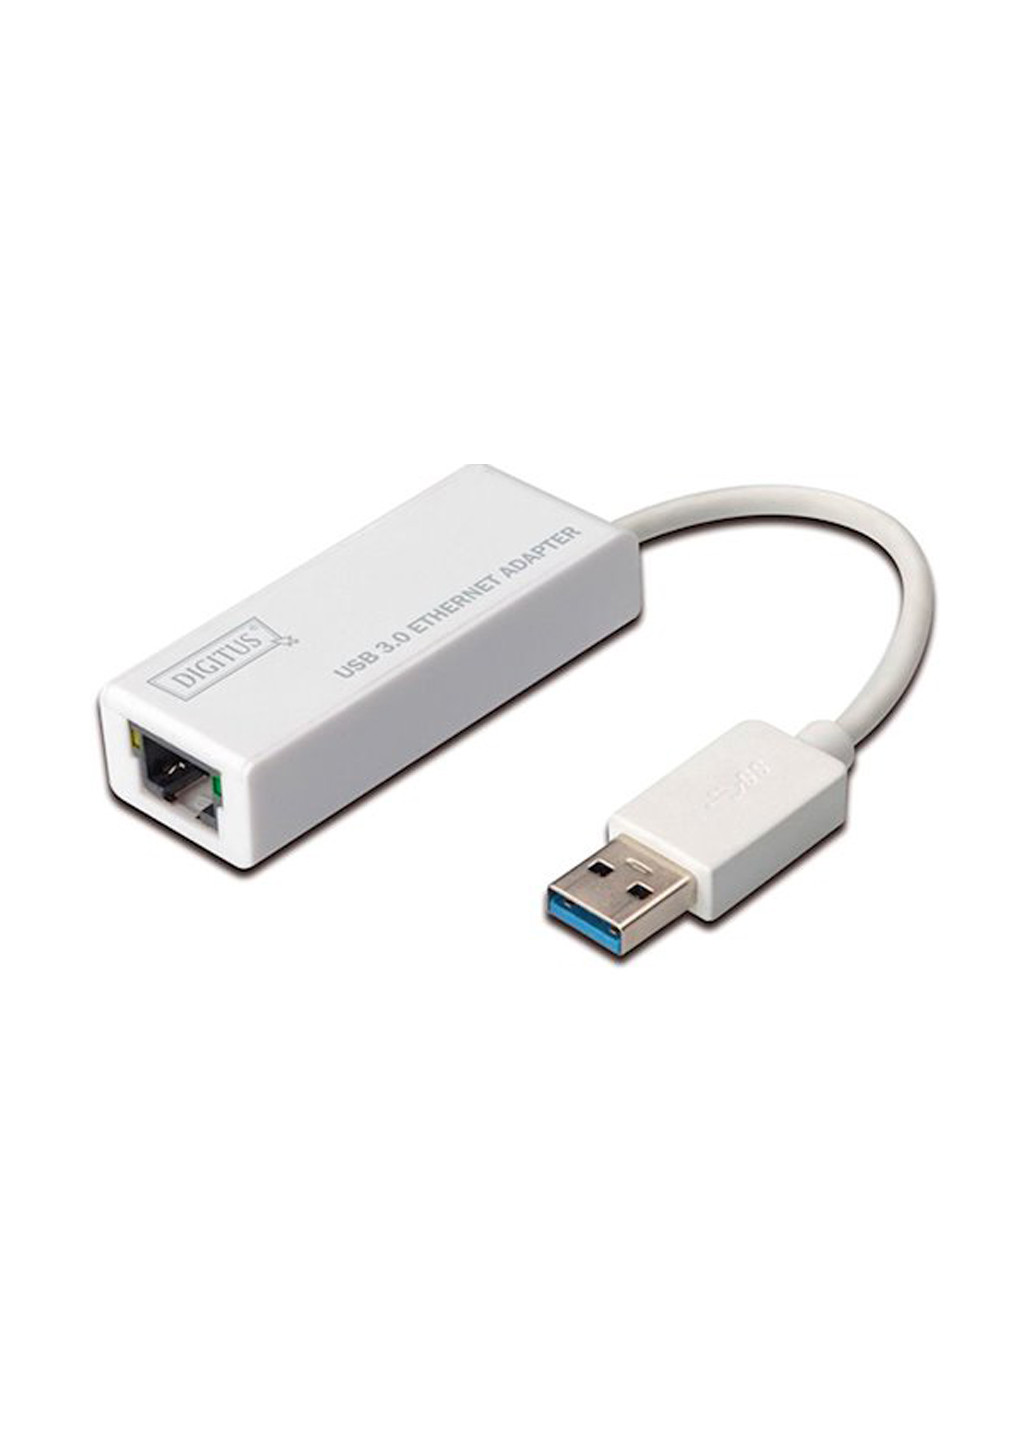 Адаптер USB 3.0 to Gigabit Ethernet (DA-70250-1) Digitus адаптер USB 3.0 to Gigabit Ethernet (DA-70250-1) белый